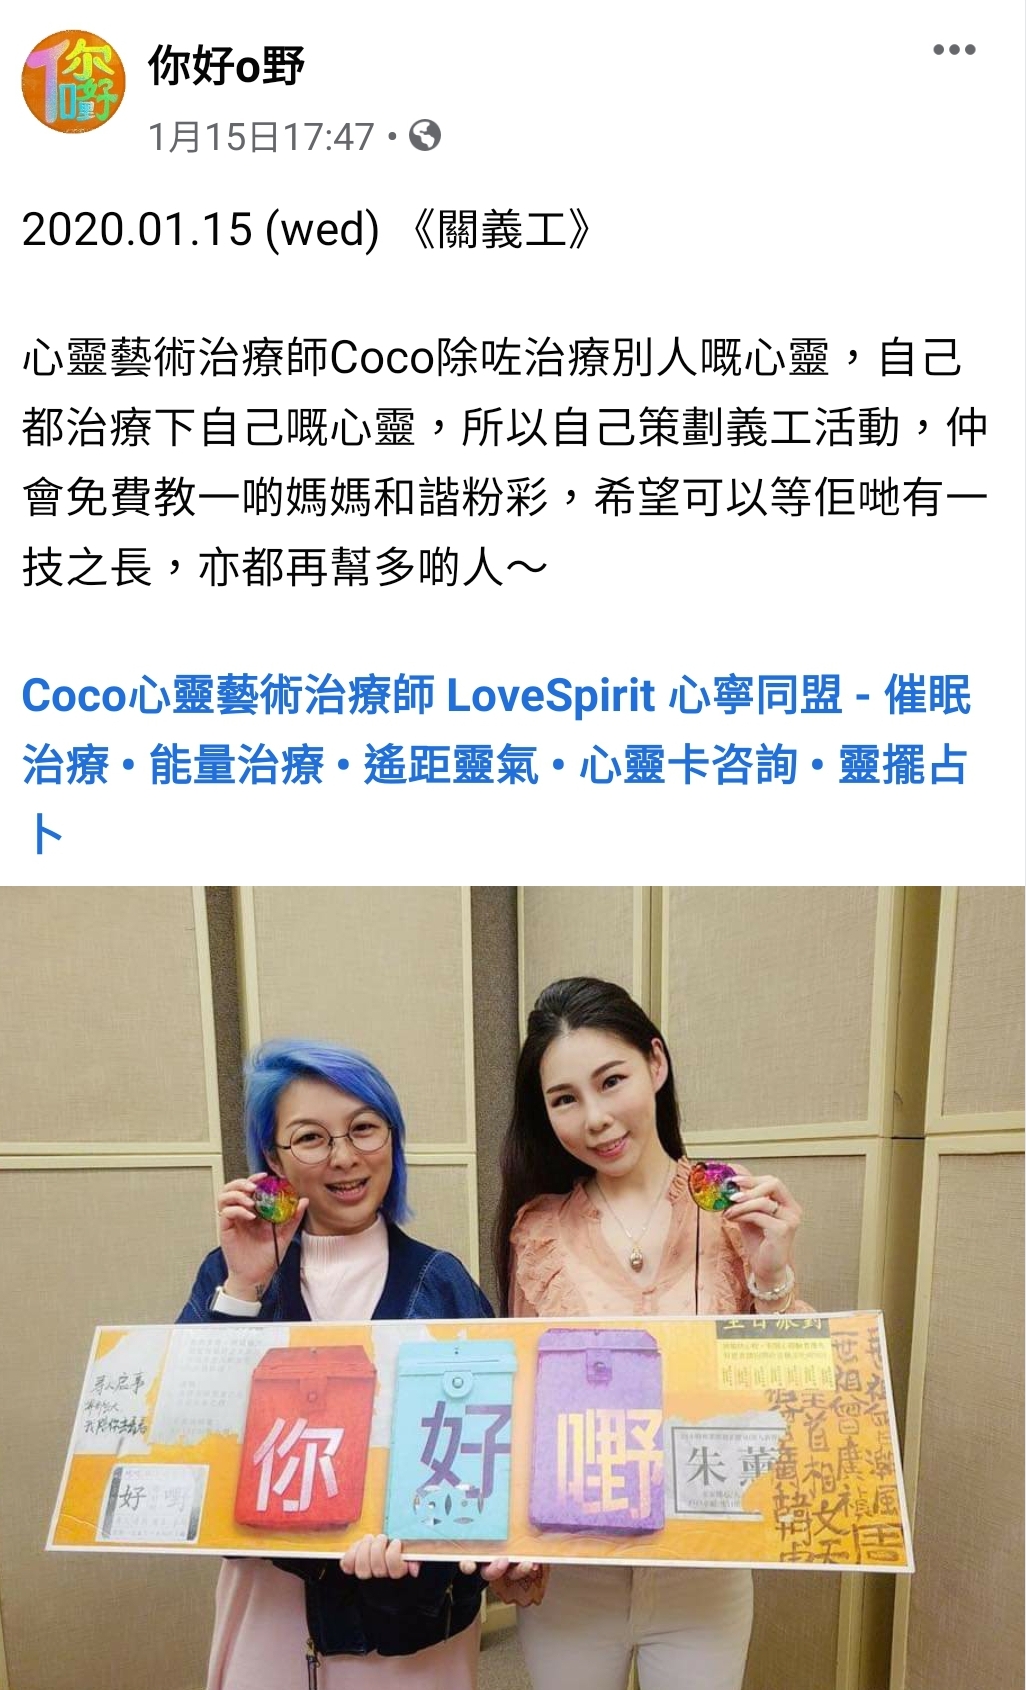 風水師Coco • LoveSpirit 之媒體報導: 商業電台 [[朱薰_你好嘢]] 邀請Coco安思叡心靈繪畫導師